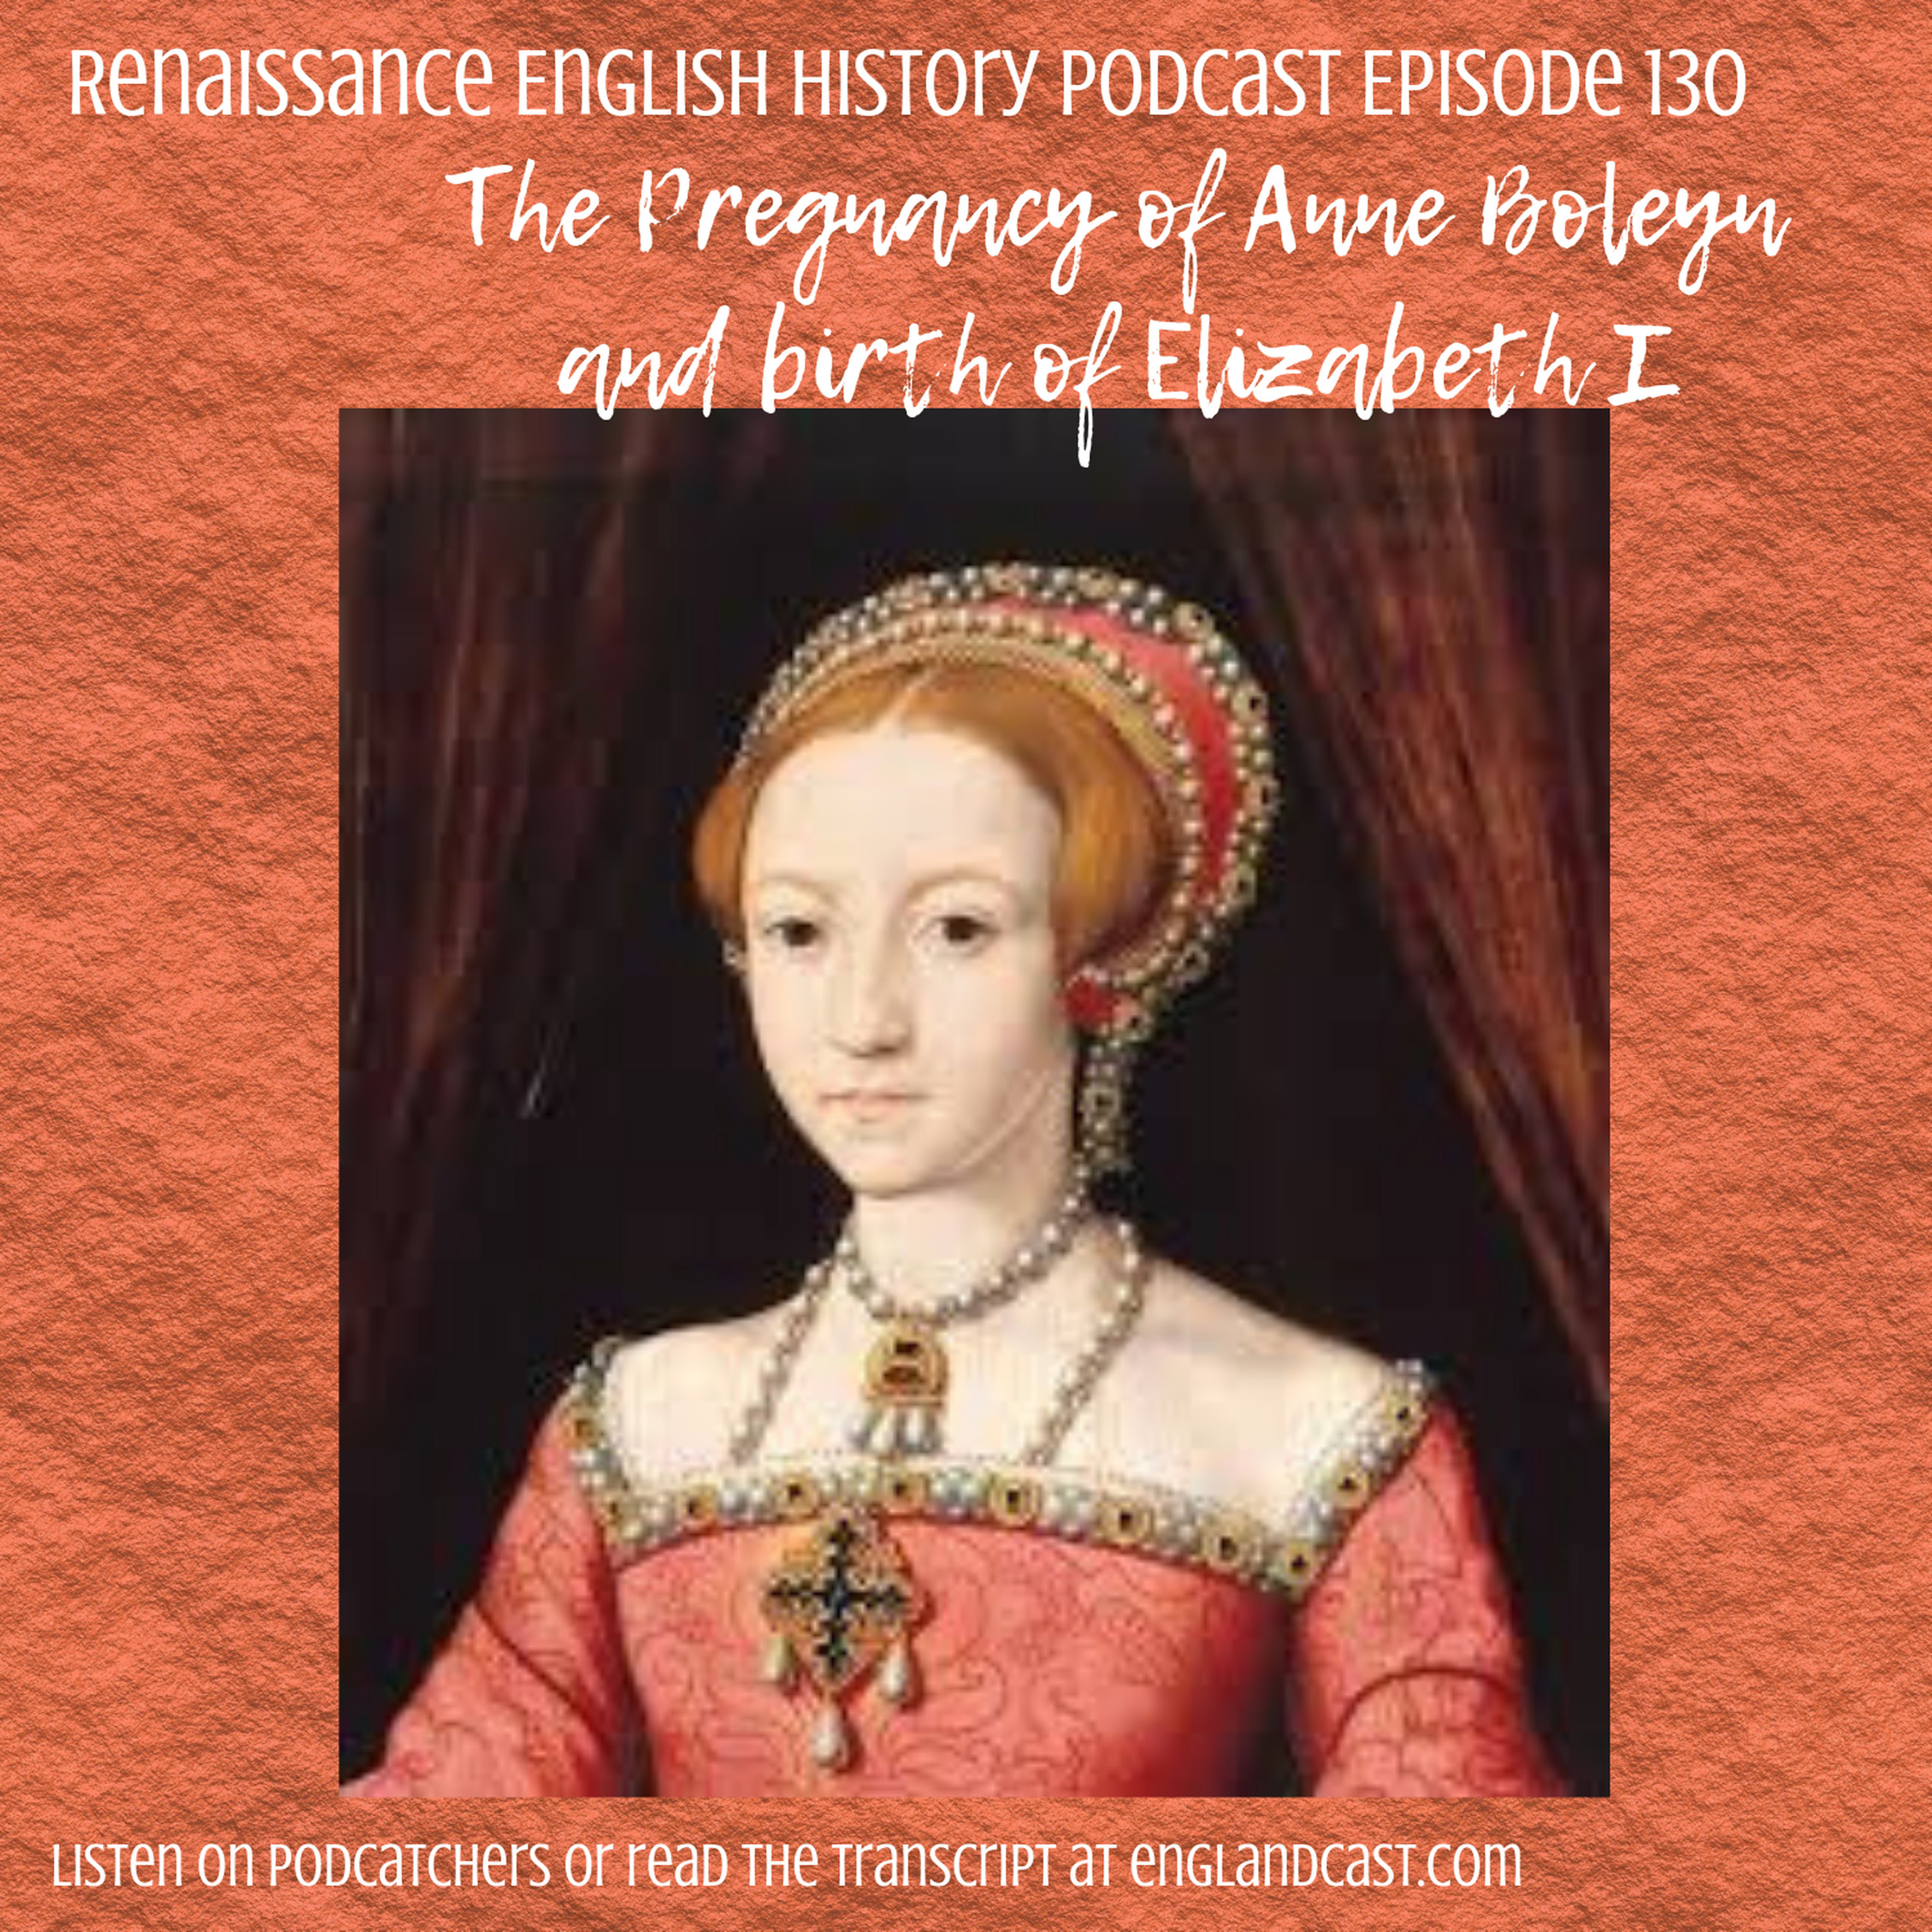 Episode 130: The Pregnancy of Anne Boleyn, and birth of Elizabeth